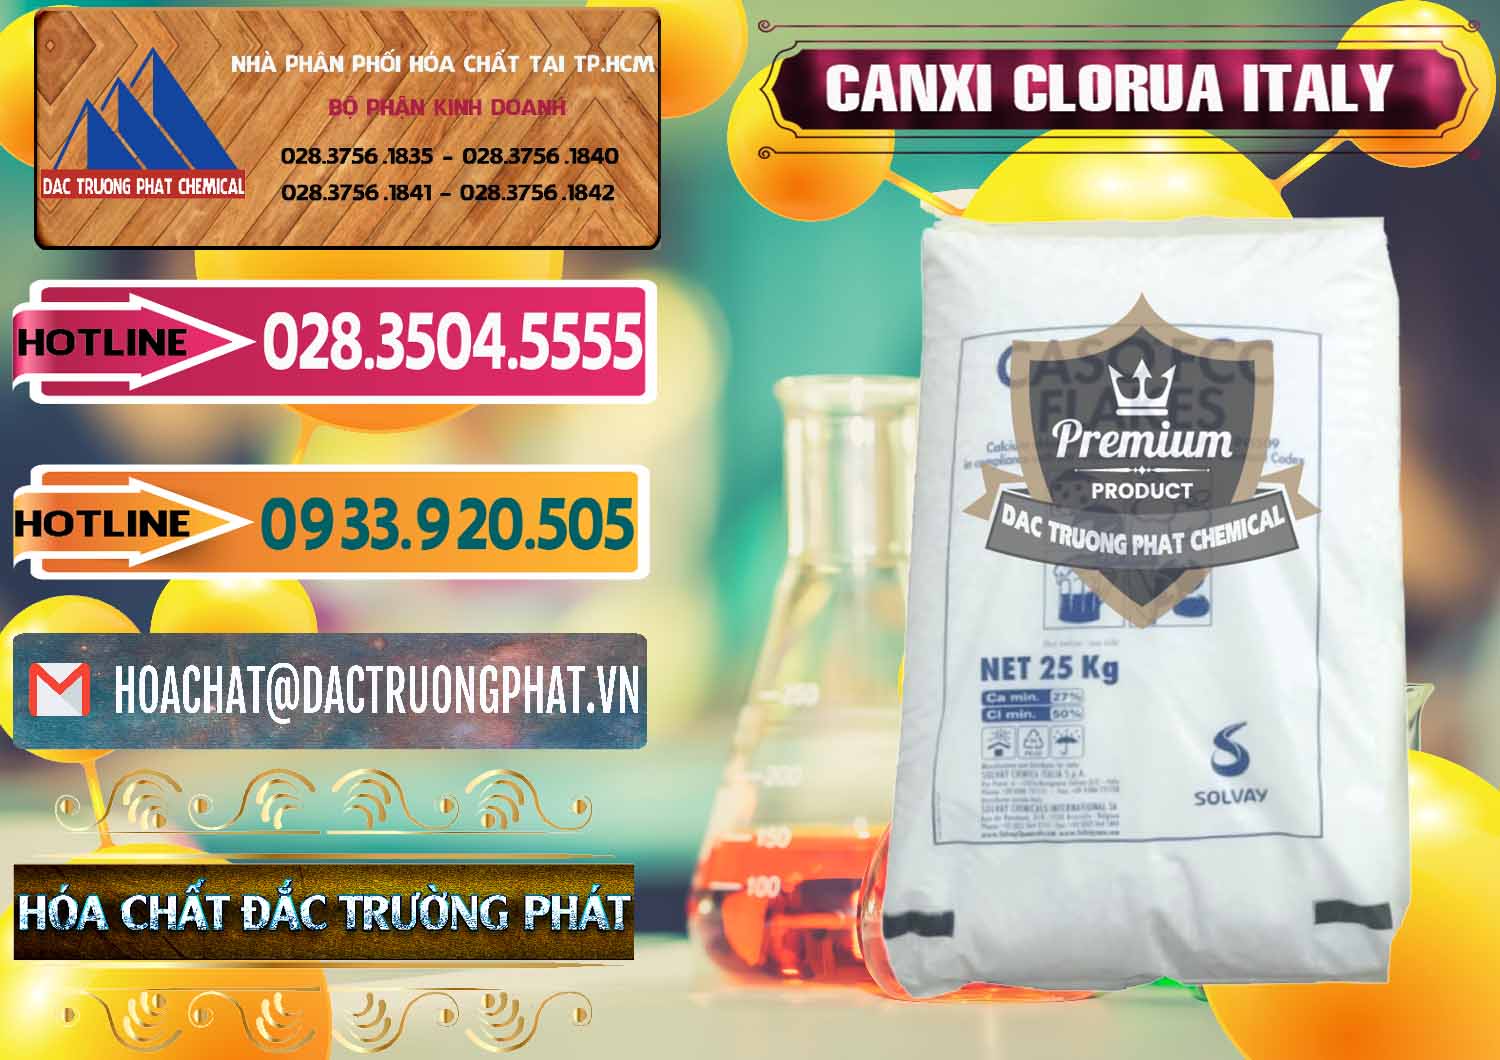 Cty bán _ phân phối CaCl2 – Canxi Clorua Food Grade Ý Italy - 0435 - Nhập khẩu ( cung cấp ) hóa chất tại TP.HCM - dactruongphat.vn